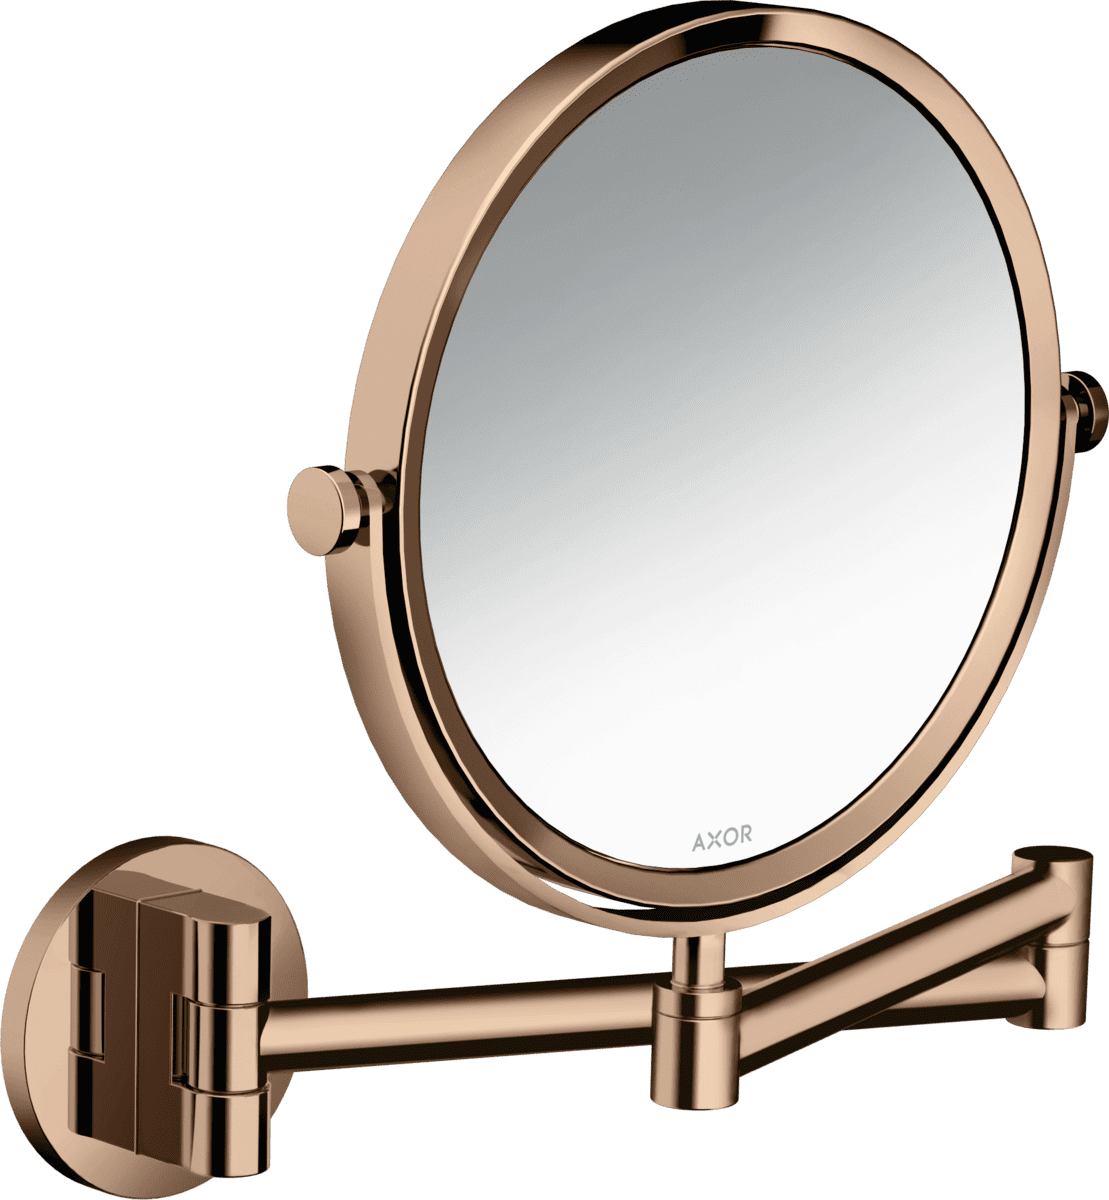 εικόνα του HANSGROHE AXOR Universal Circular Shaving mirror #42849300 - Polished Red Gold